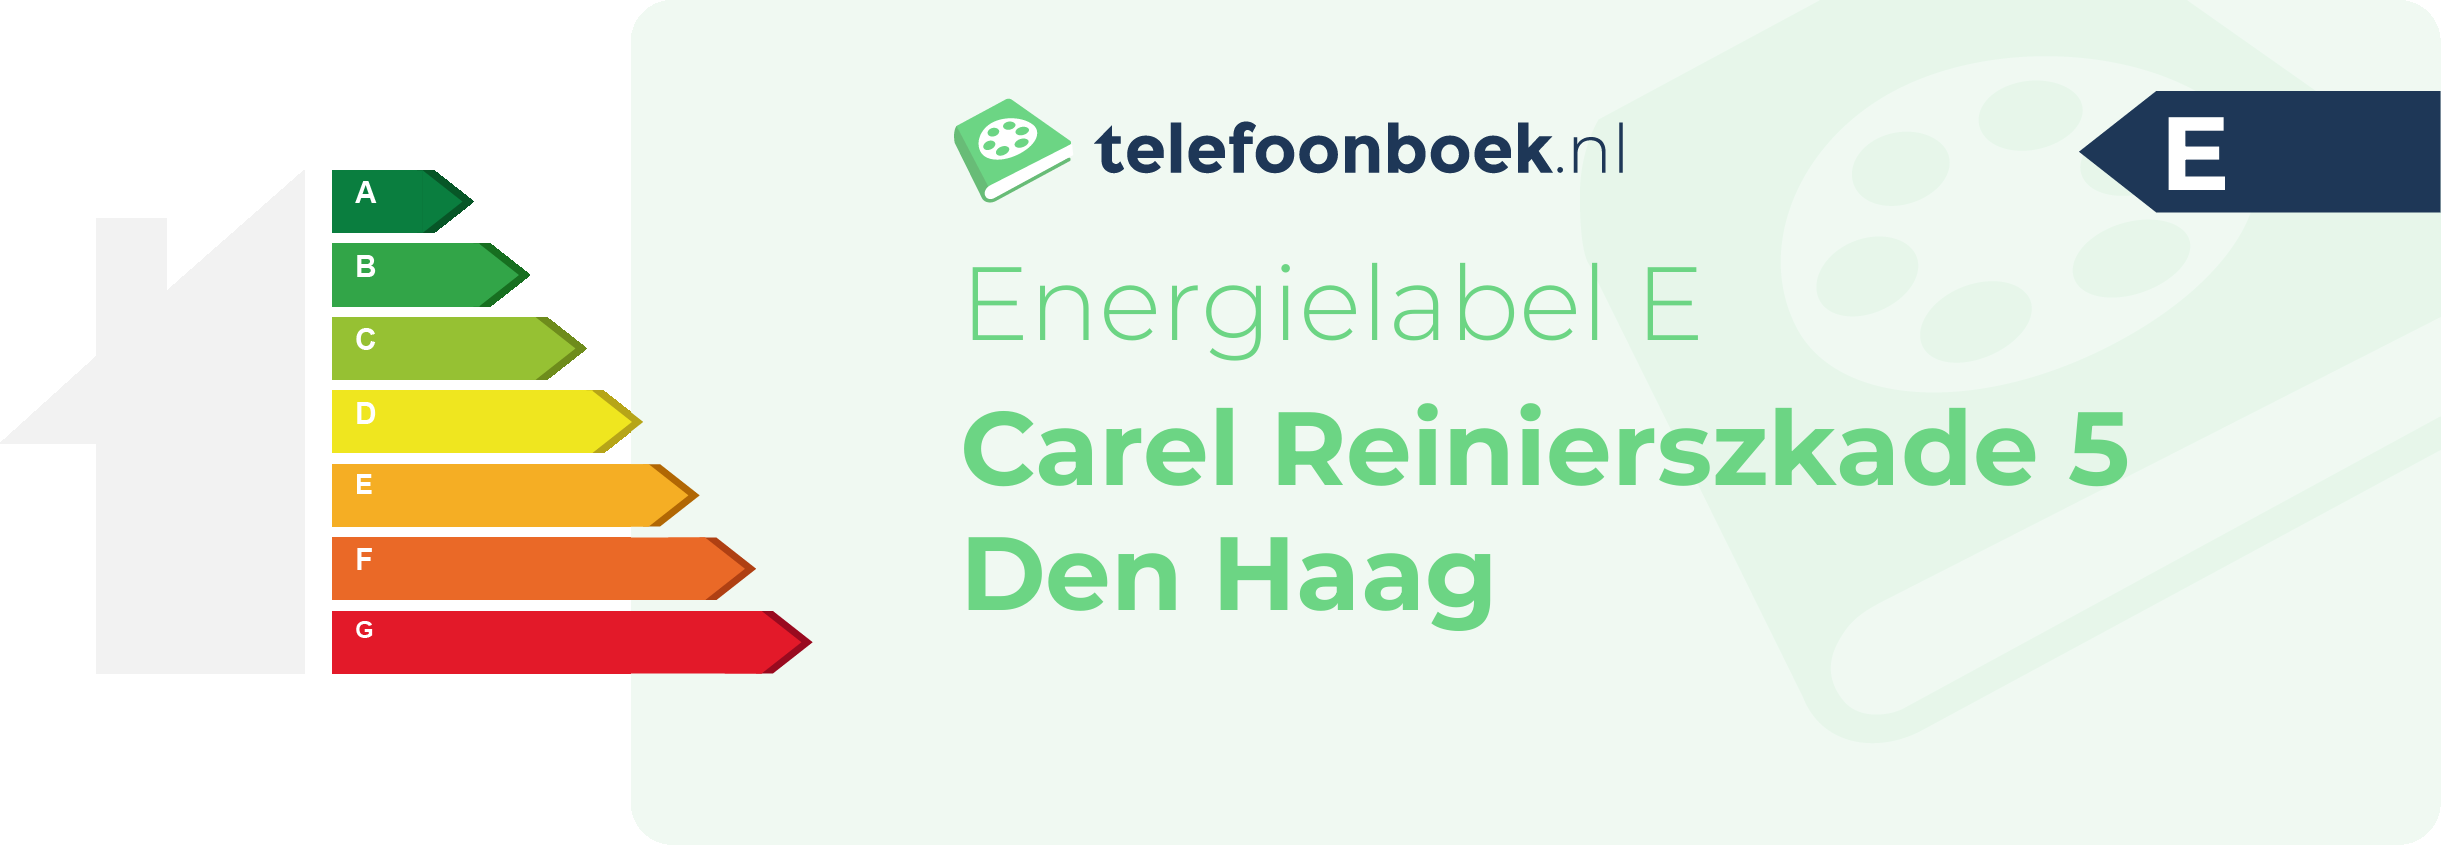 Energielabel Carel Reinierszkade 5 Den Haag